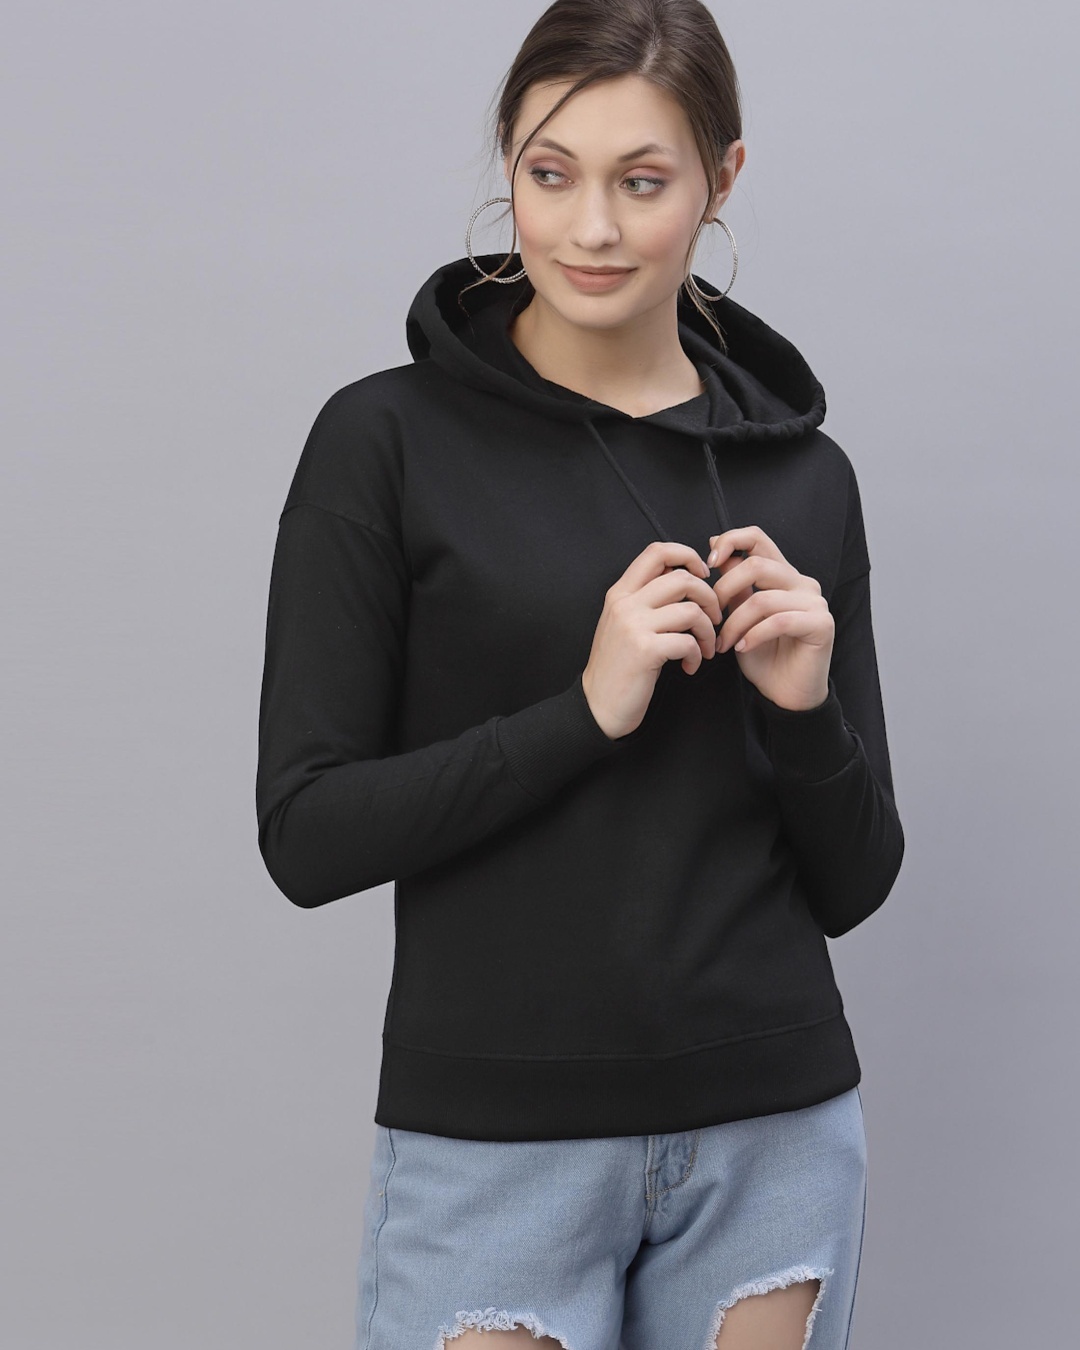 Buy Women's Black Hooded Sweatshirt Online at Bewakoof